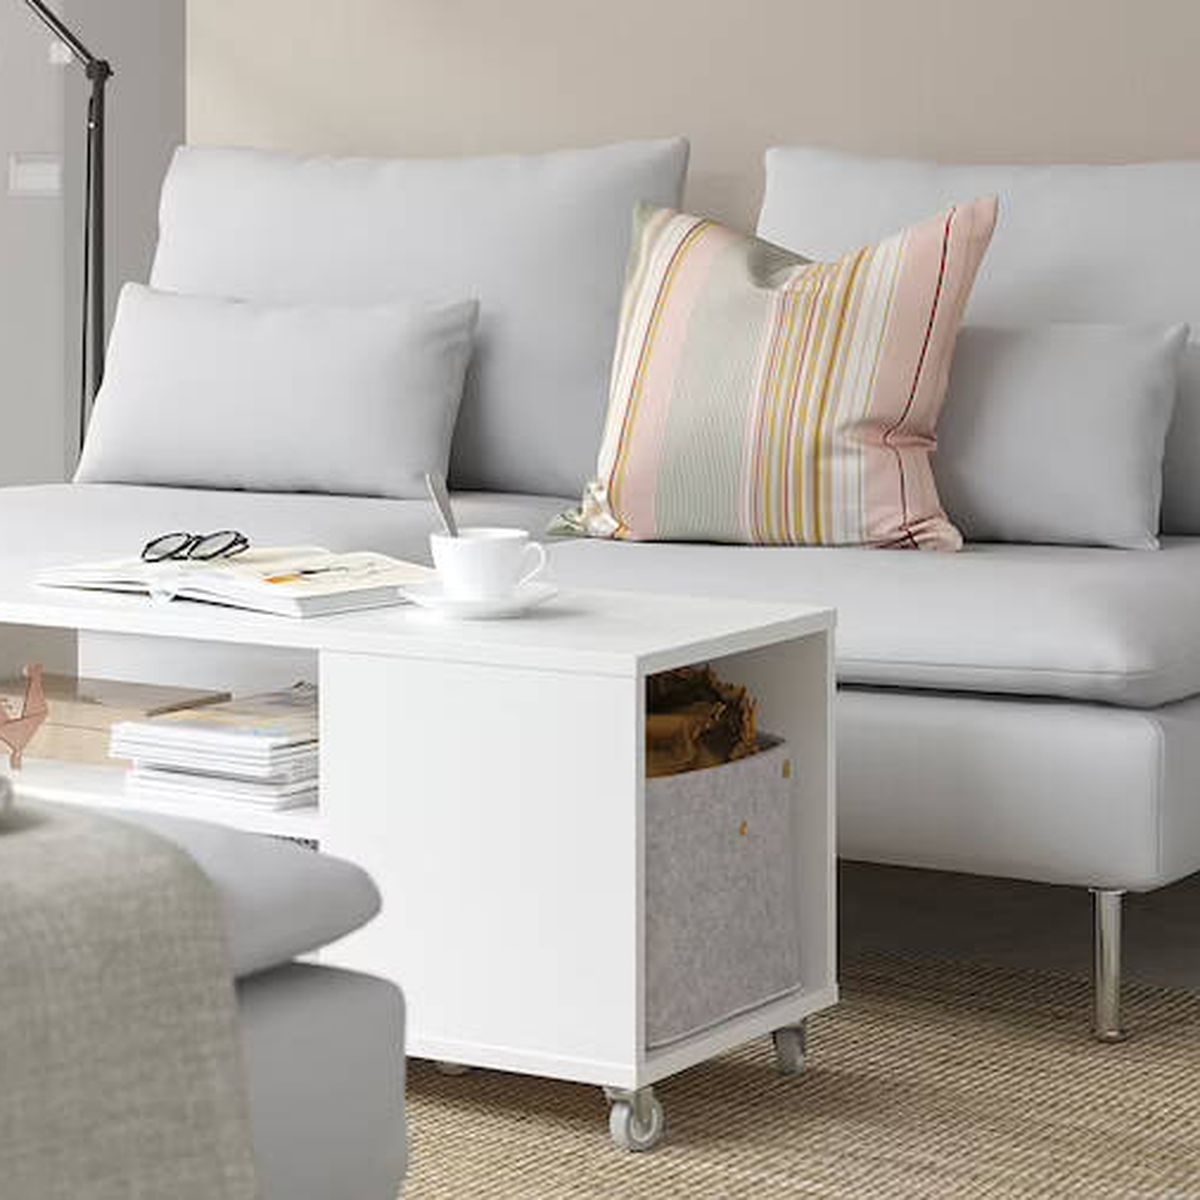 Para llevar collar Pericia El nuevo mueble de Ikea para casas pequeñas y salones ordenados